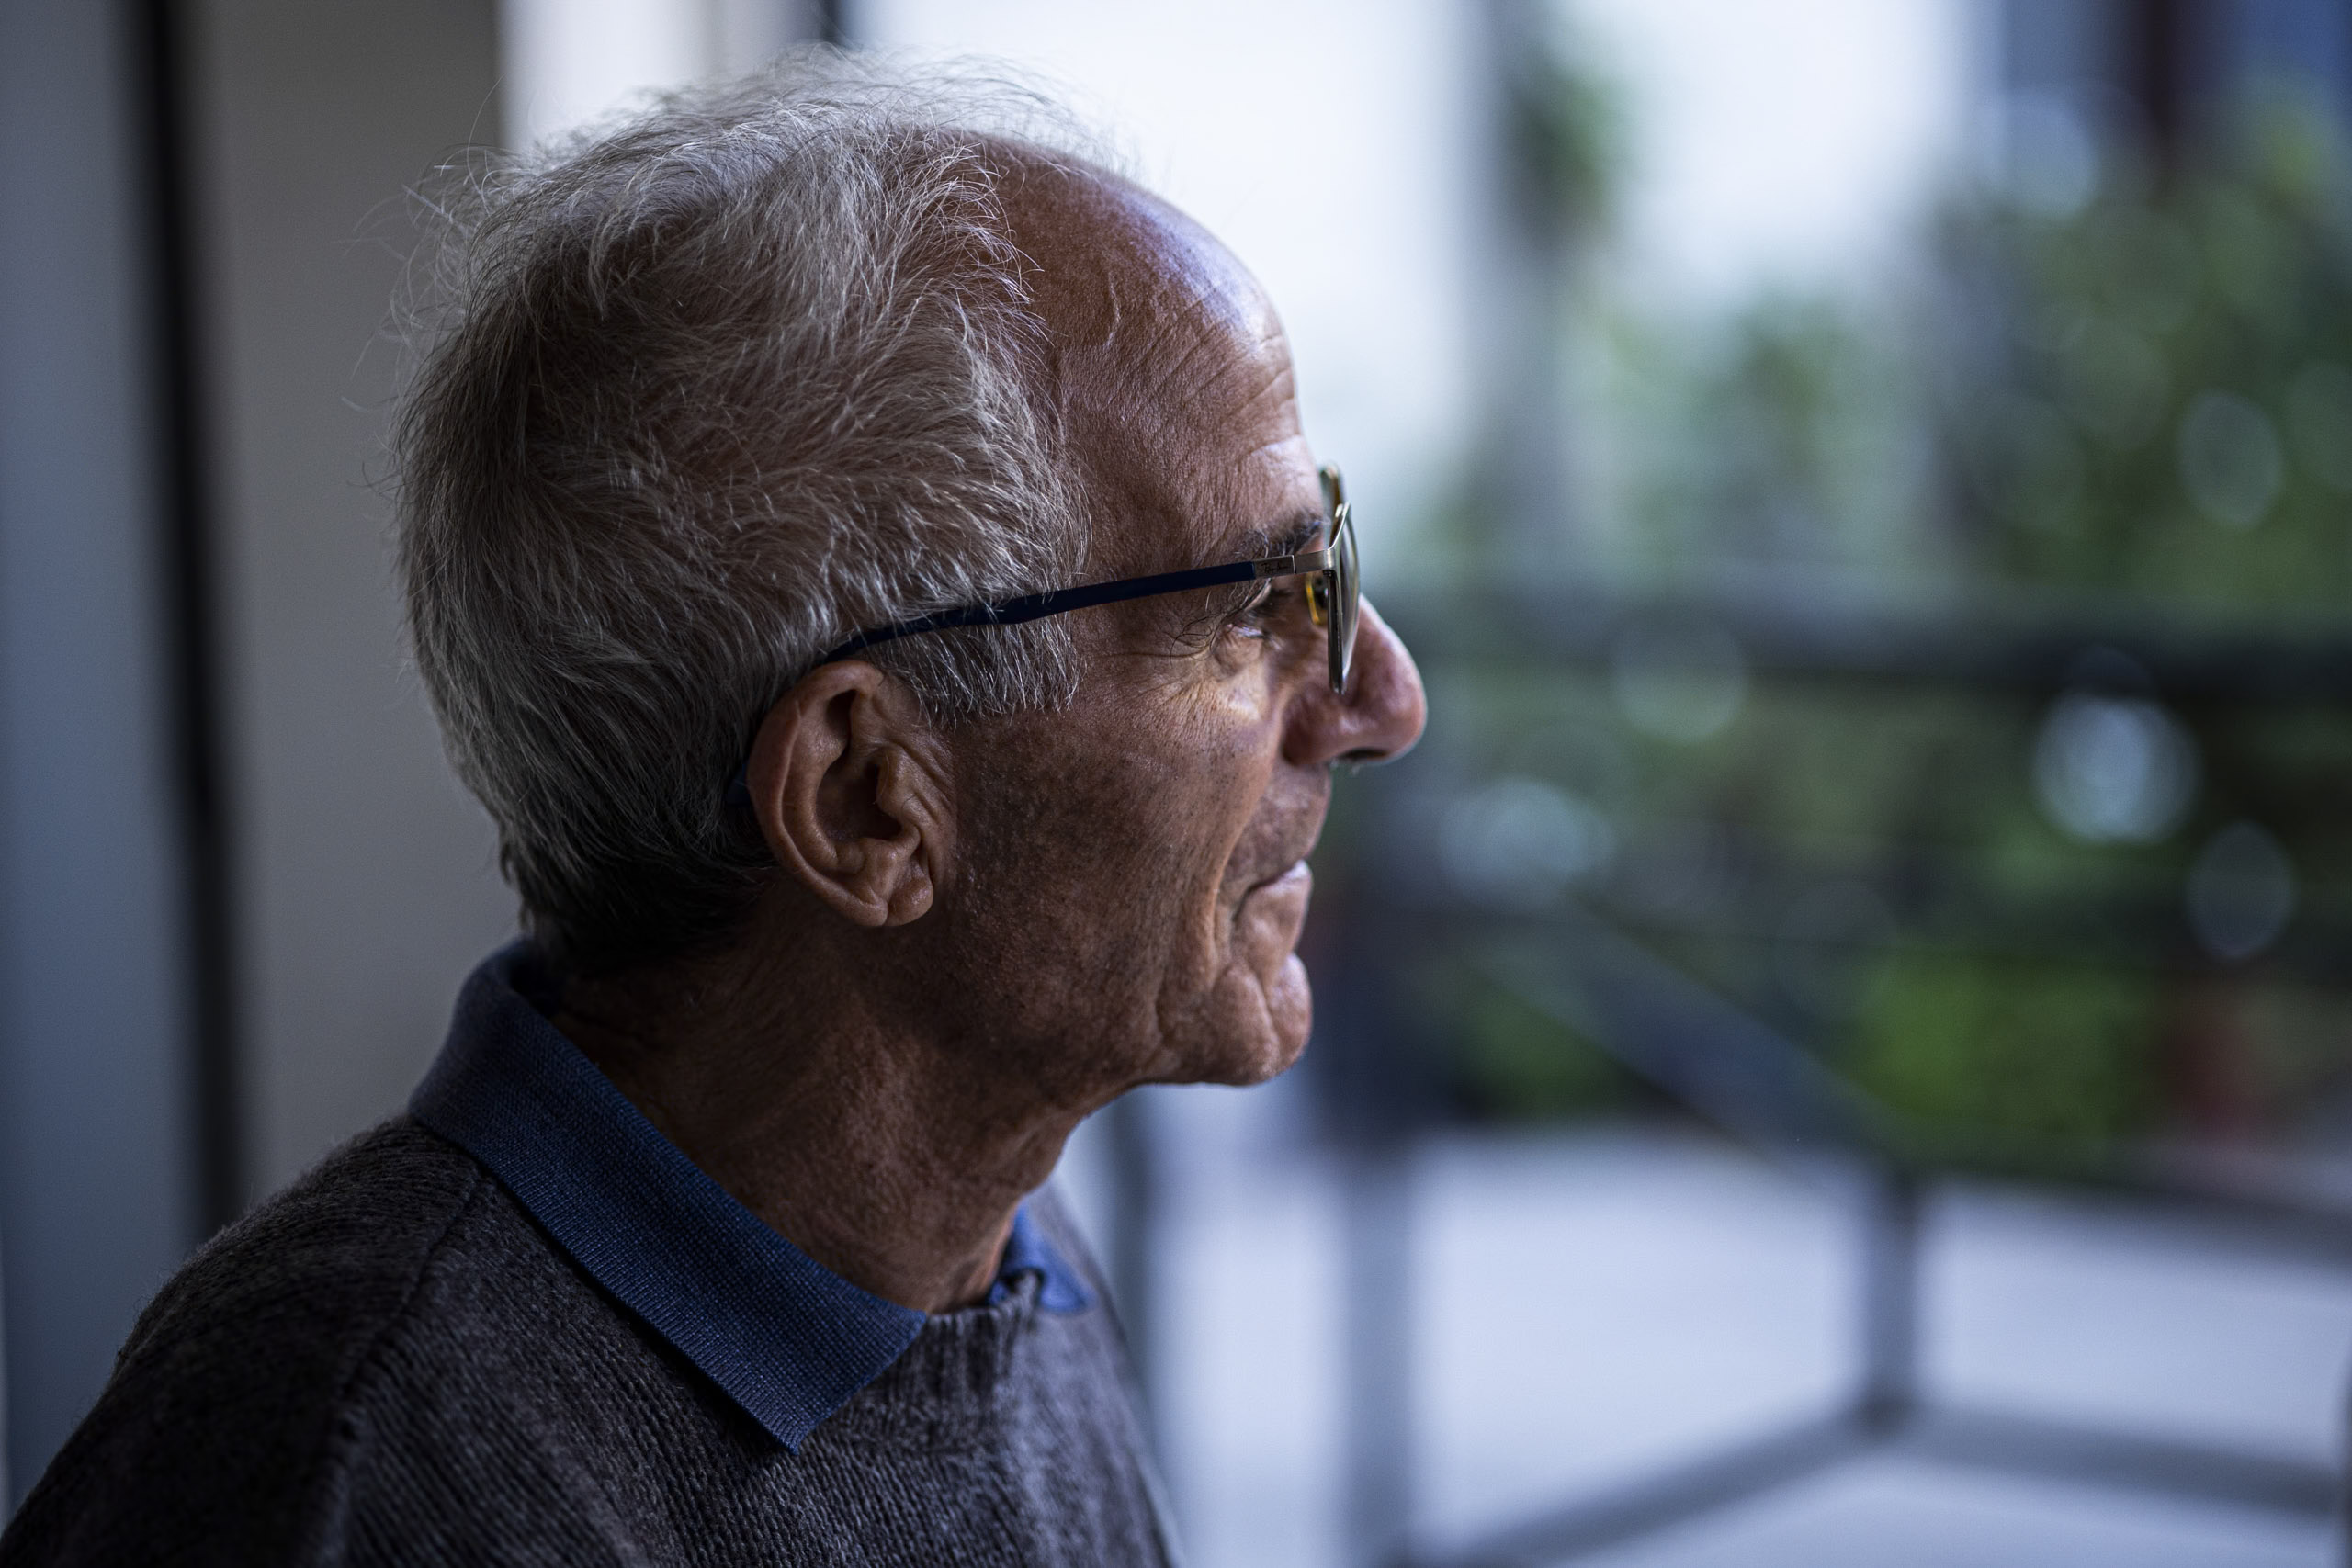 Profilansicht eines älteren Mannes mit weißem Haar und Brille, der mit nachdenklichem Gesichtsausdruck aus dem Fenster blickt. Weicher Fokus auf grünem, unscharfem Hintergrund. © Fotografie Tomas Rodriguez